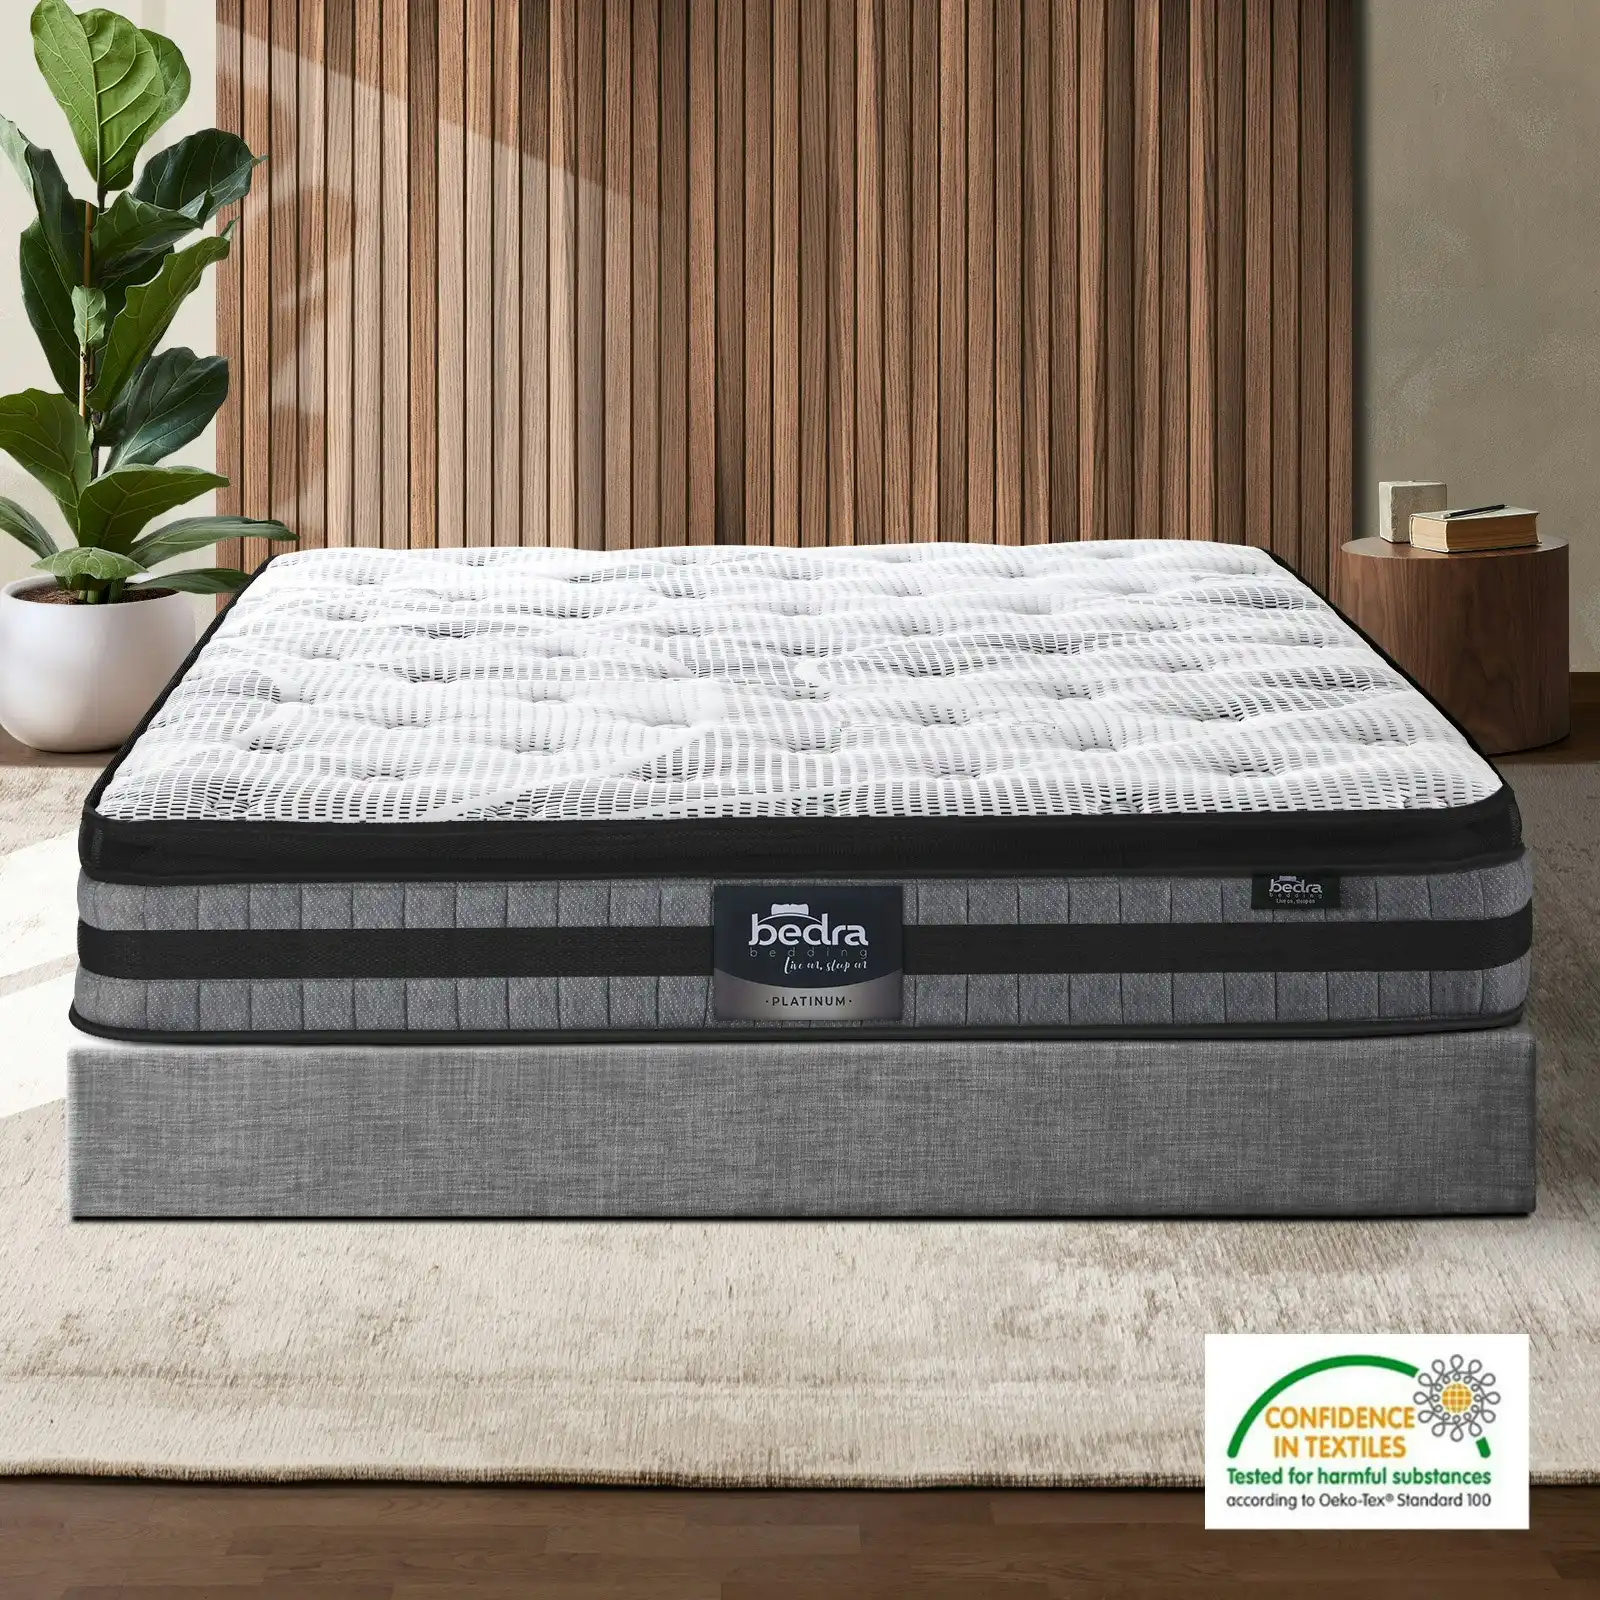 Bedra Queen Mattress Cool Gel Foam Bonnell Spring Luxury Pillow Top Bed 22cm